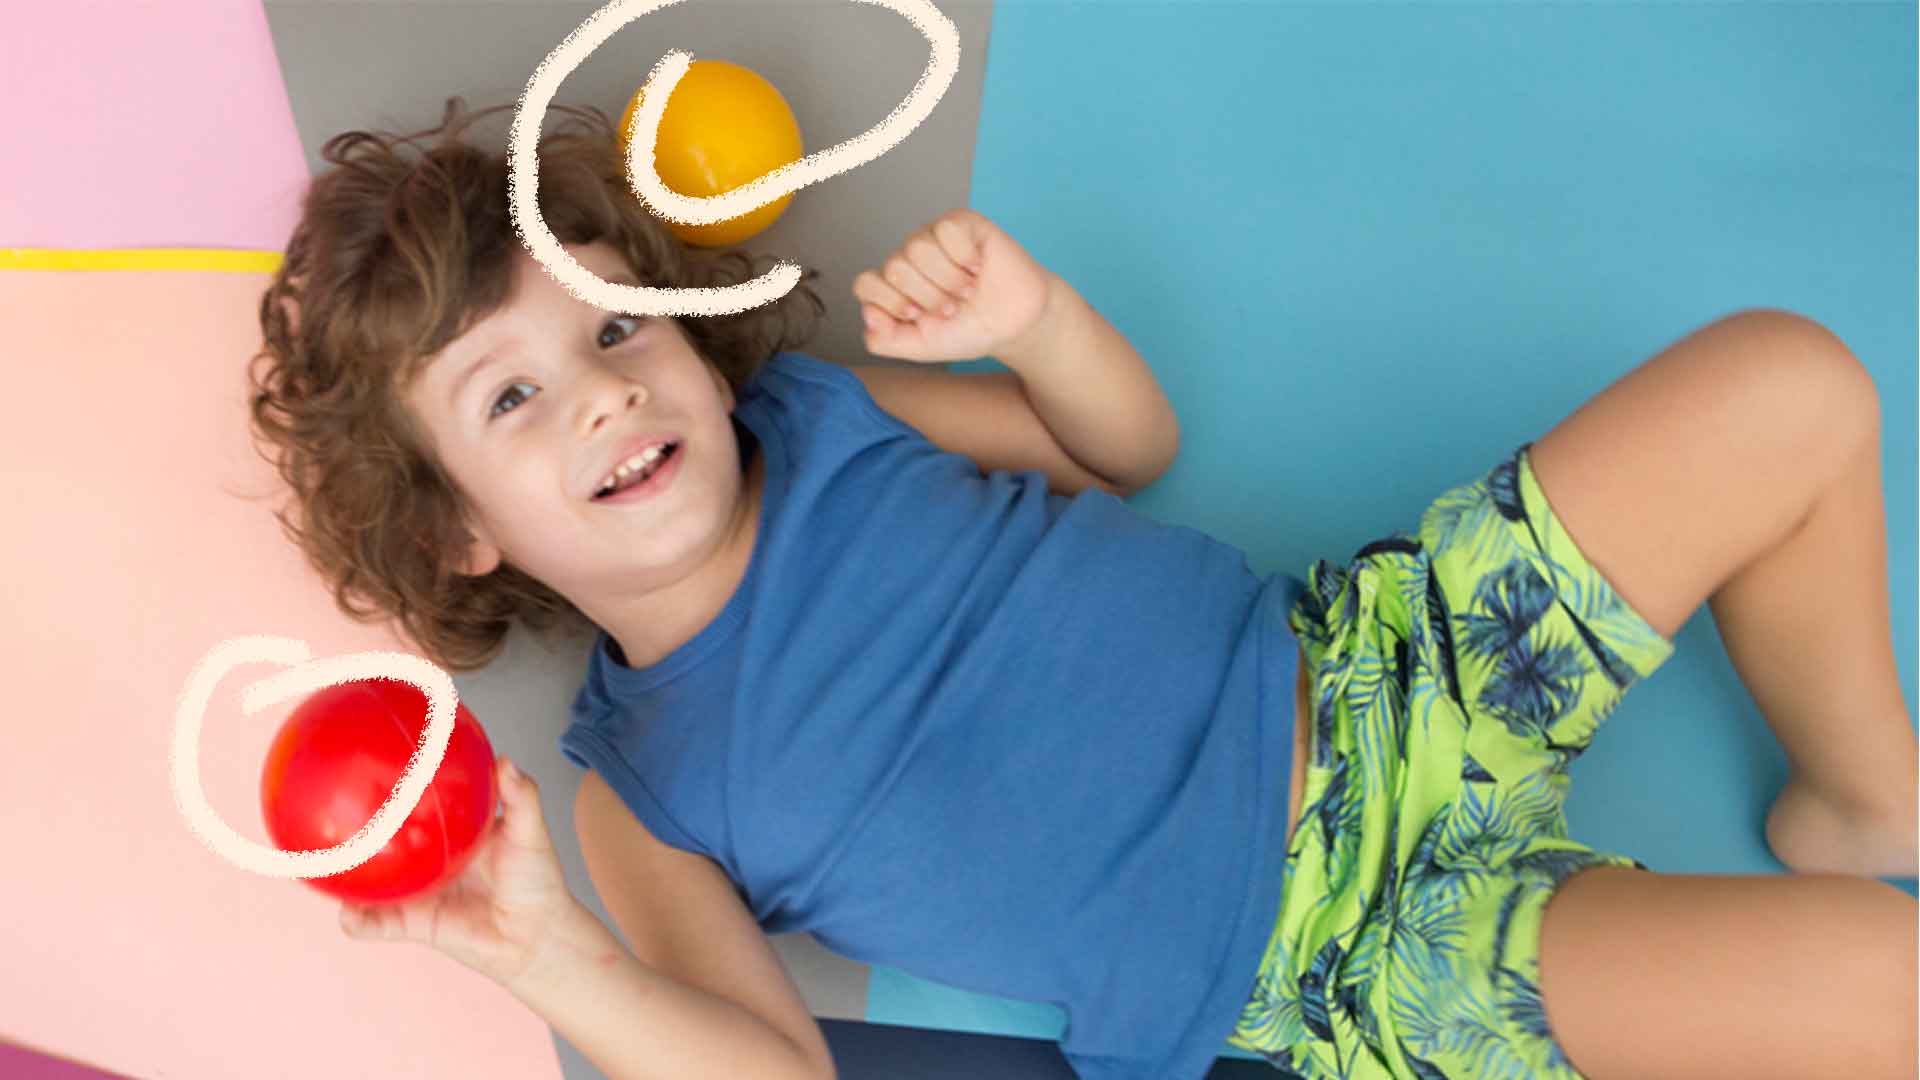 Foto de um menino deitado olhando para cima com uma bola vermelha na mão e uma amarela próxima da cabeça. Ela tem cabelo cacheado e veste uma camiseta azul e um short verde.